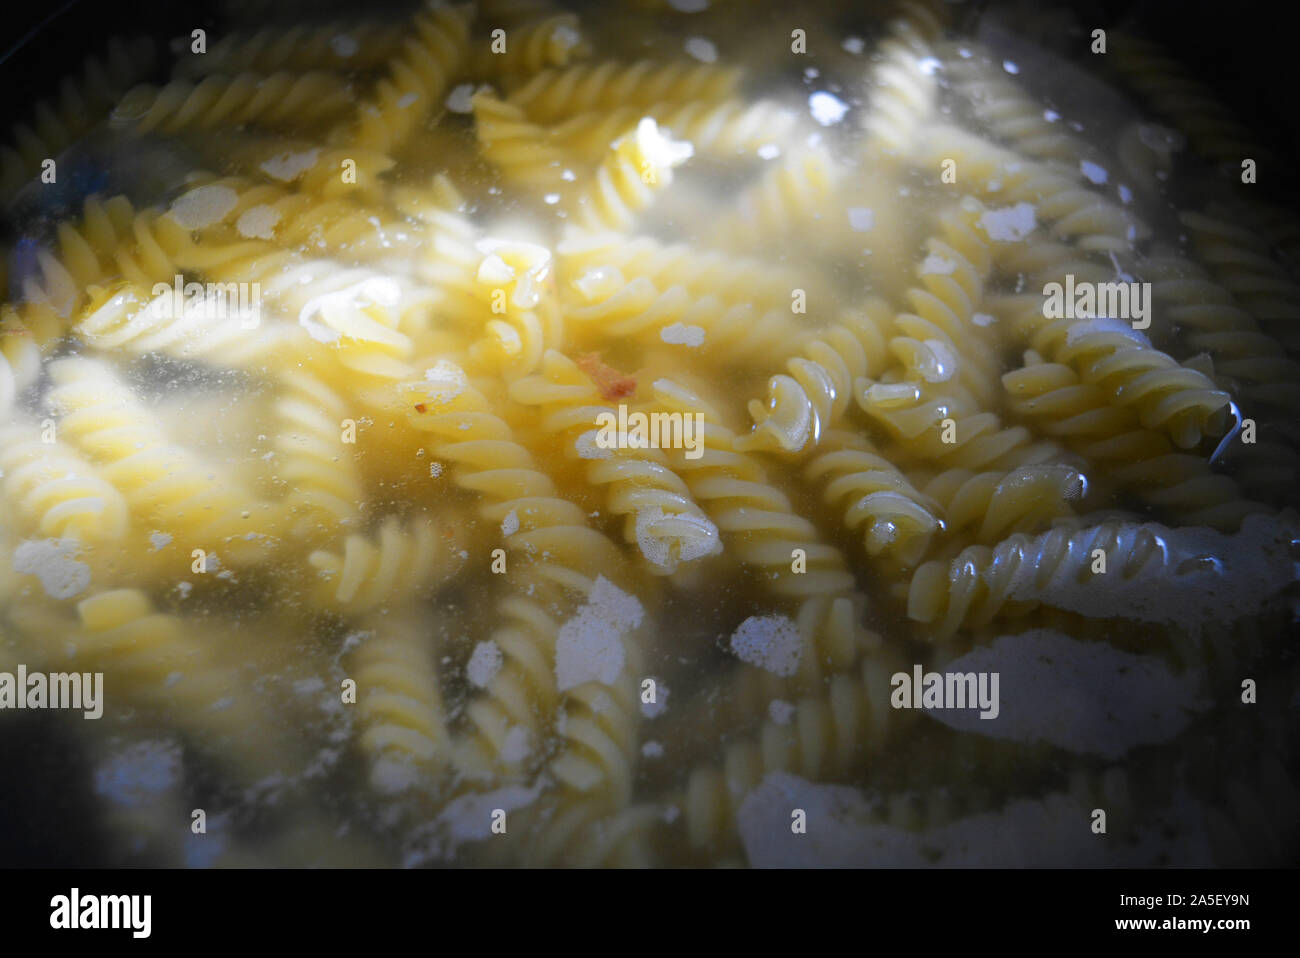 Home Kochen und Bereiten köstliche warme Gerichte. Der Prozess des Kochens spiralförmigen Teigwaren aus Hartweizen. Gelbe Nudeln in heißem Wasser in sonnigen Farben. Stockfoto